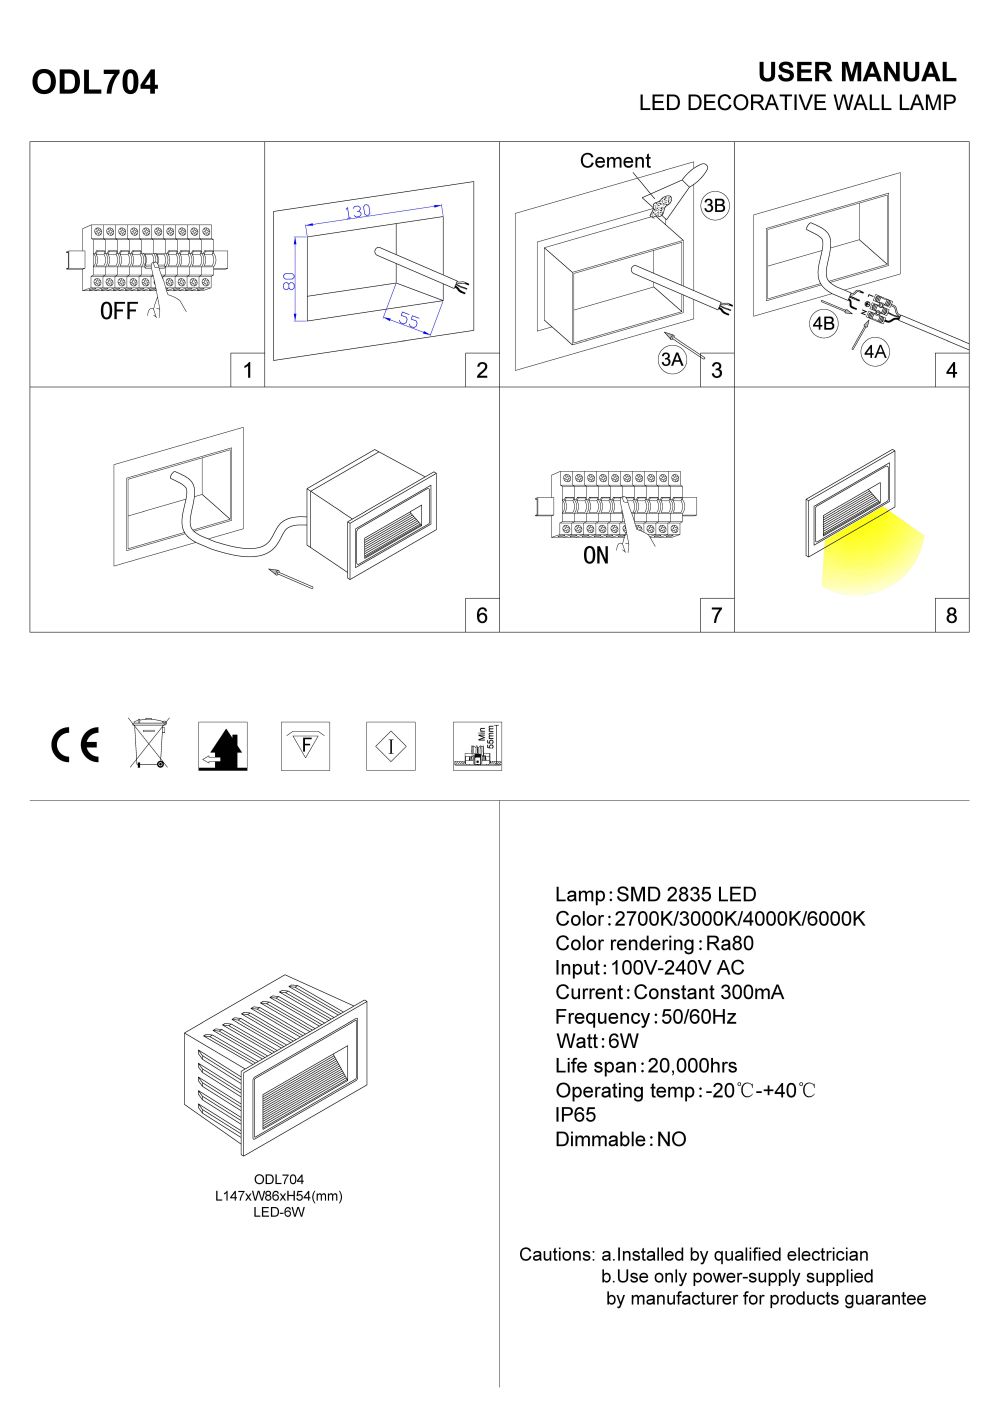 ODL704 6 watt recessed wall light installation guide